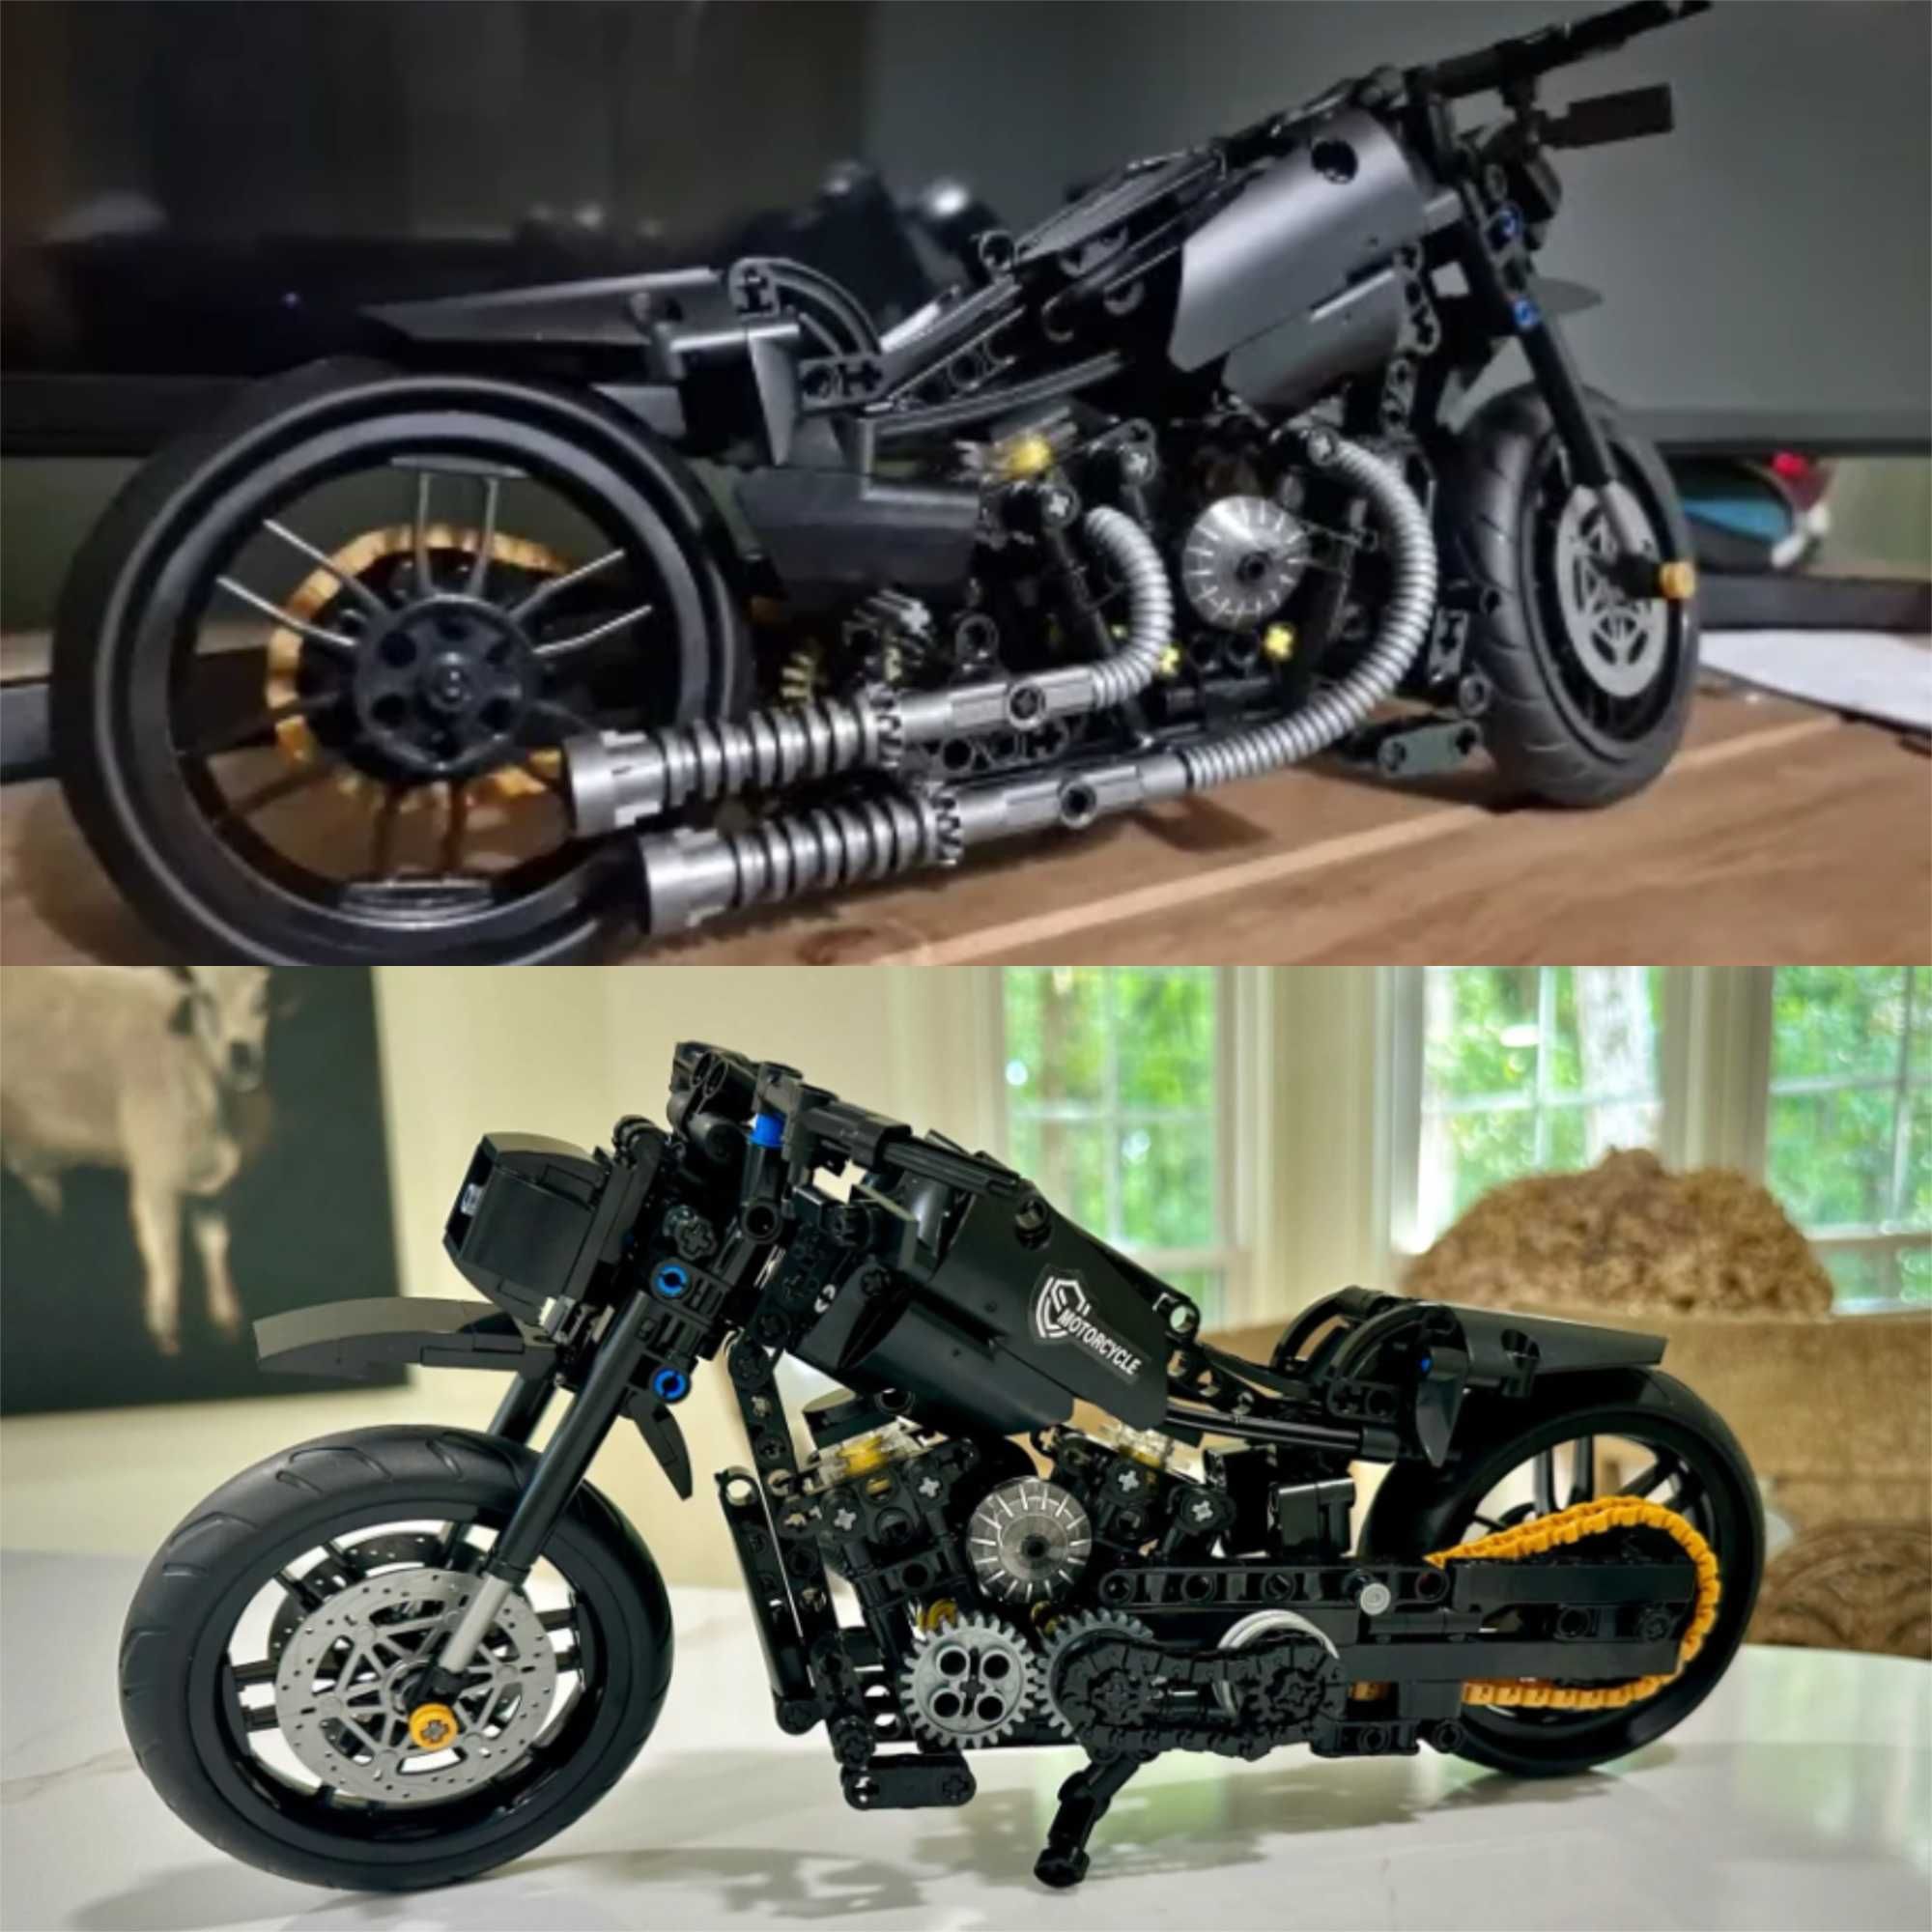 TIP compatibil lego Technic motocicleta Harley Davidson 30cm